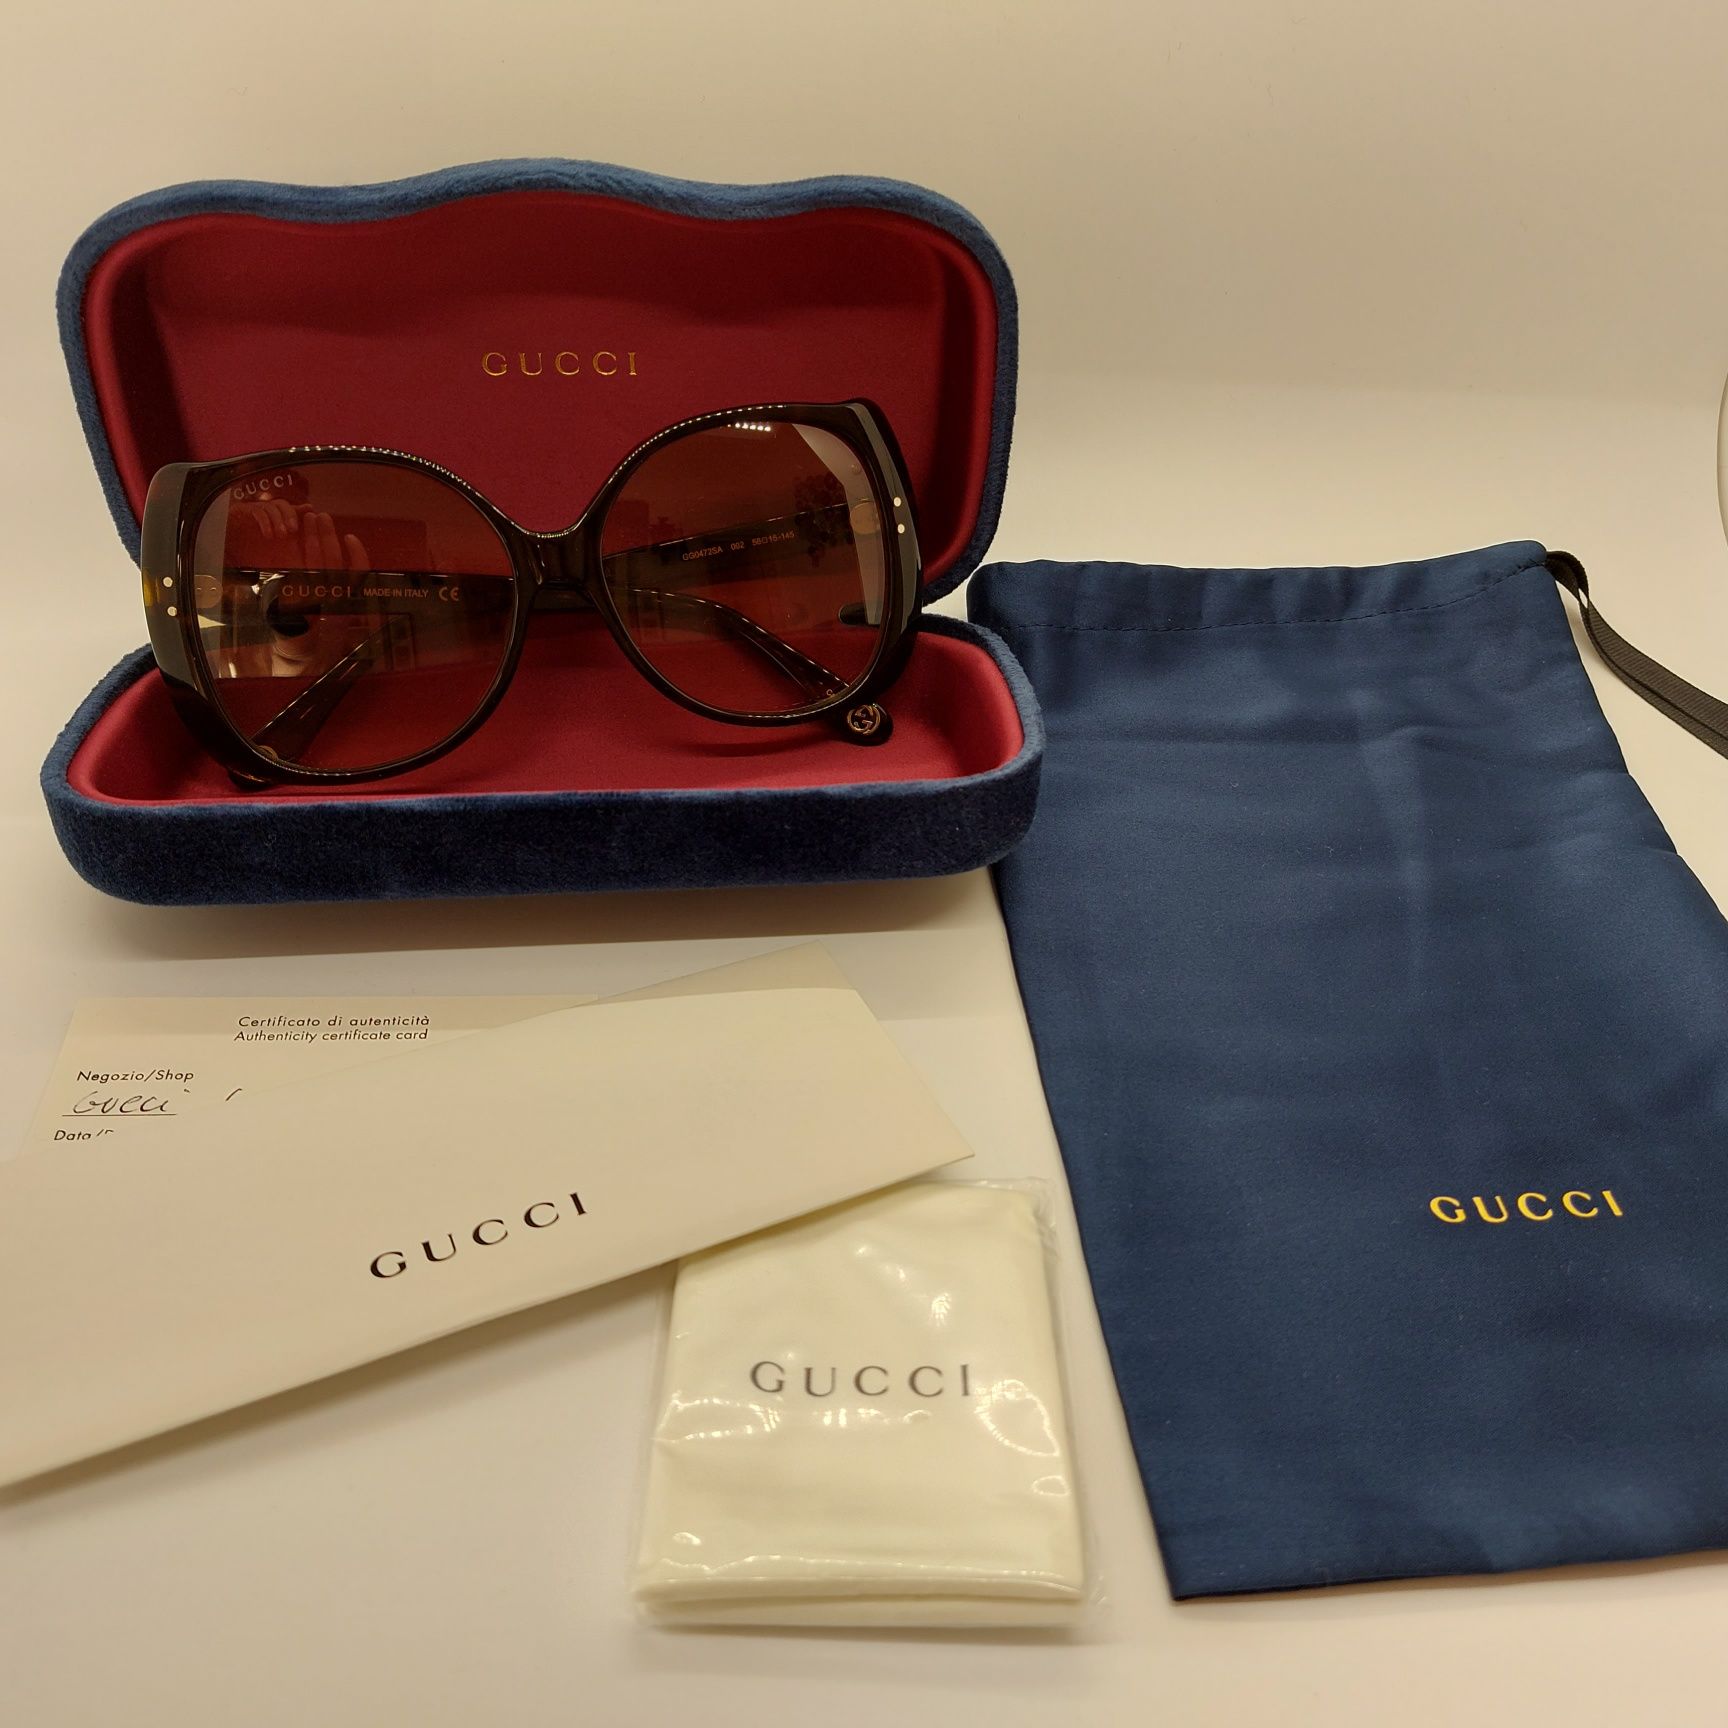 Óculos sol Gucci originais
Preço original €280

- novos e nunca usados